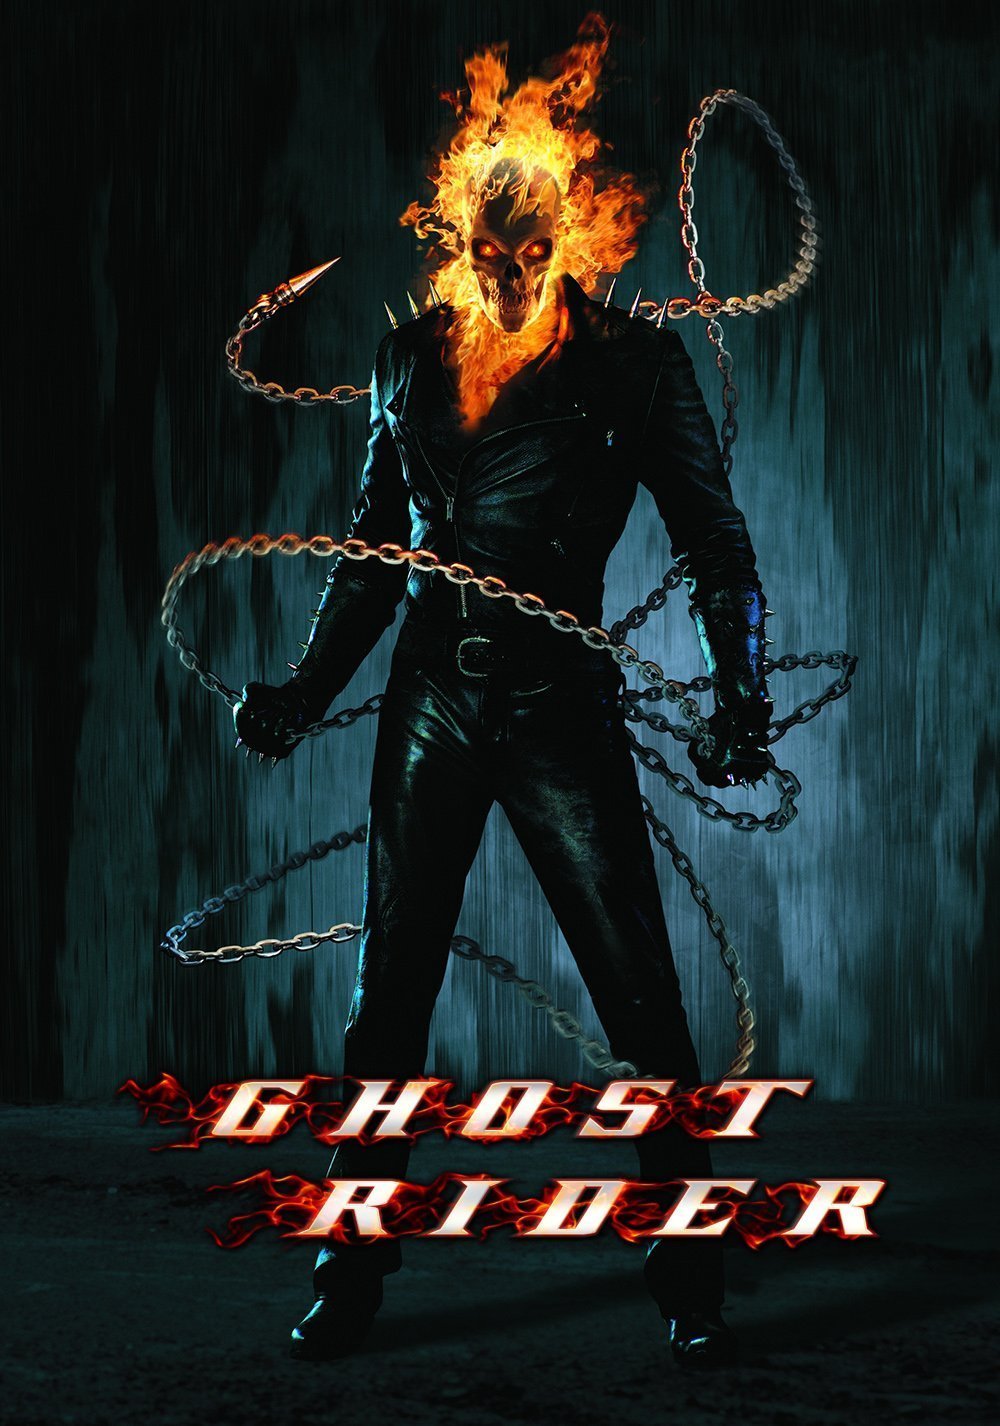 Poster du film Ghost Rider réalisé par Mark Steven Johnson avec Nicolas Cage (Johnny Blaze)